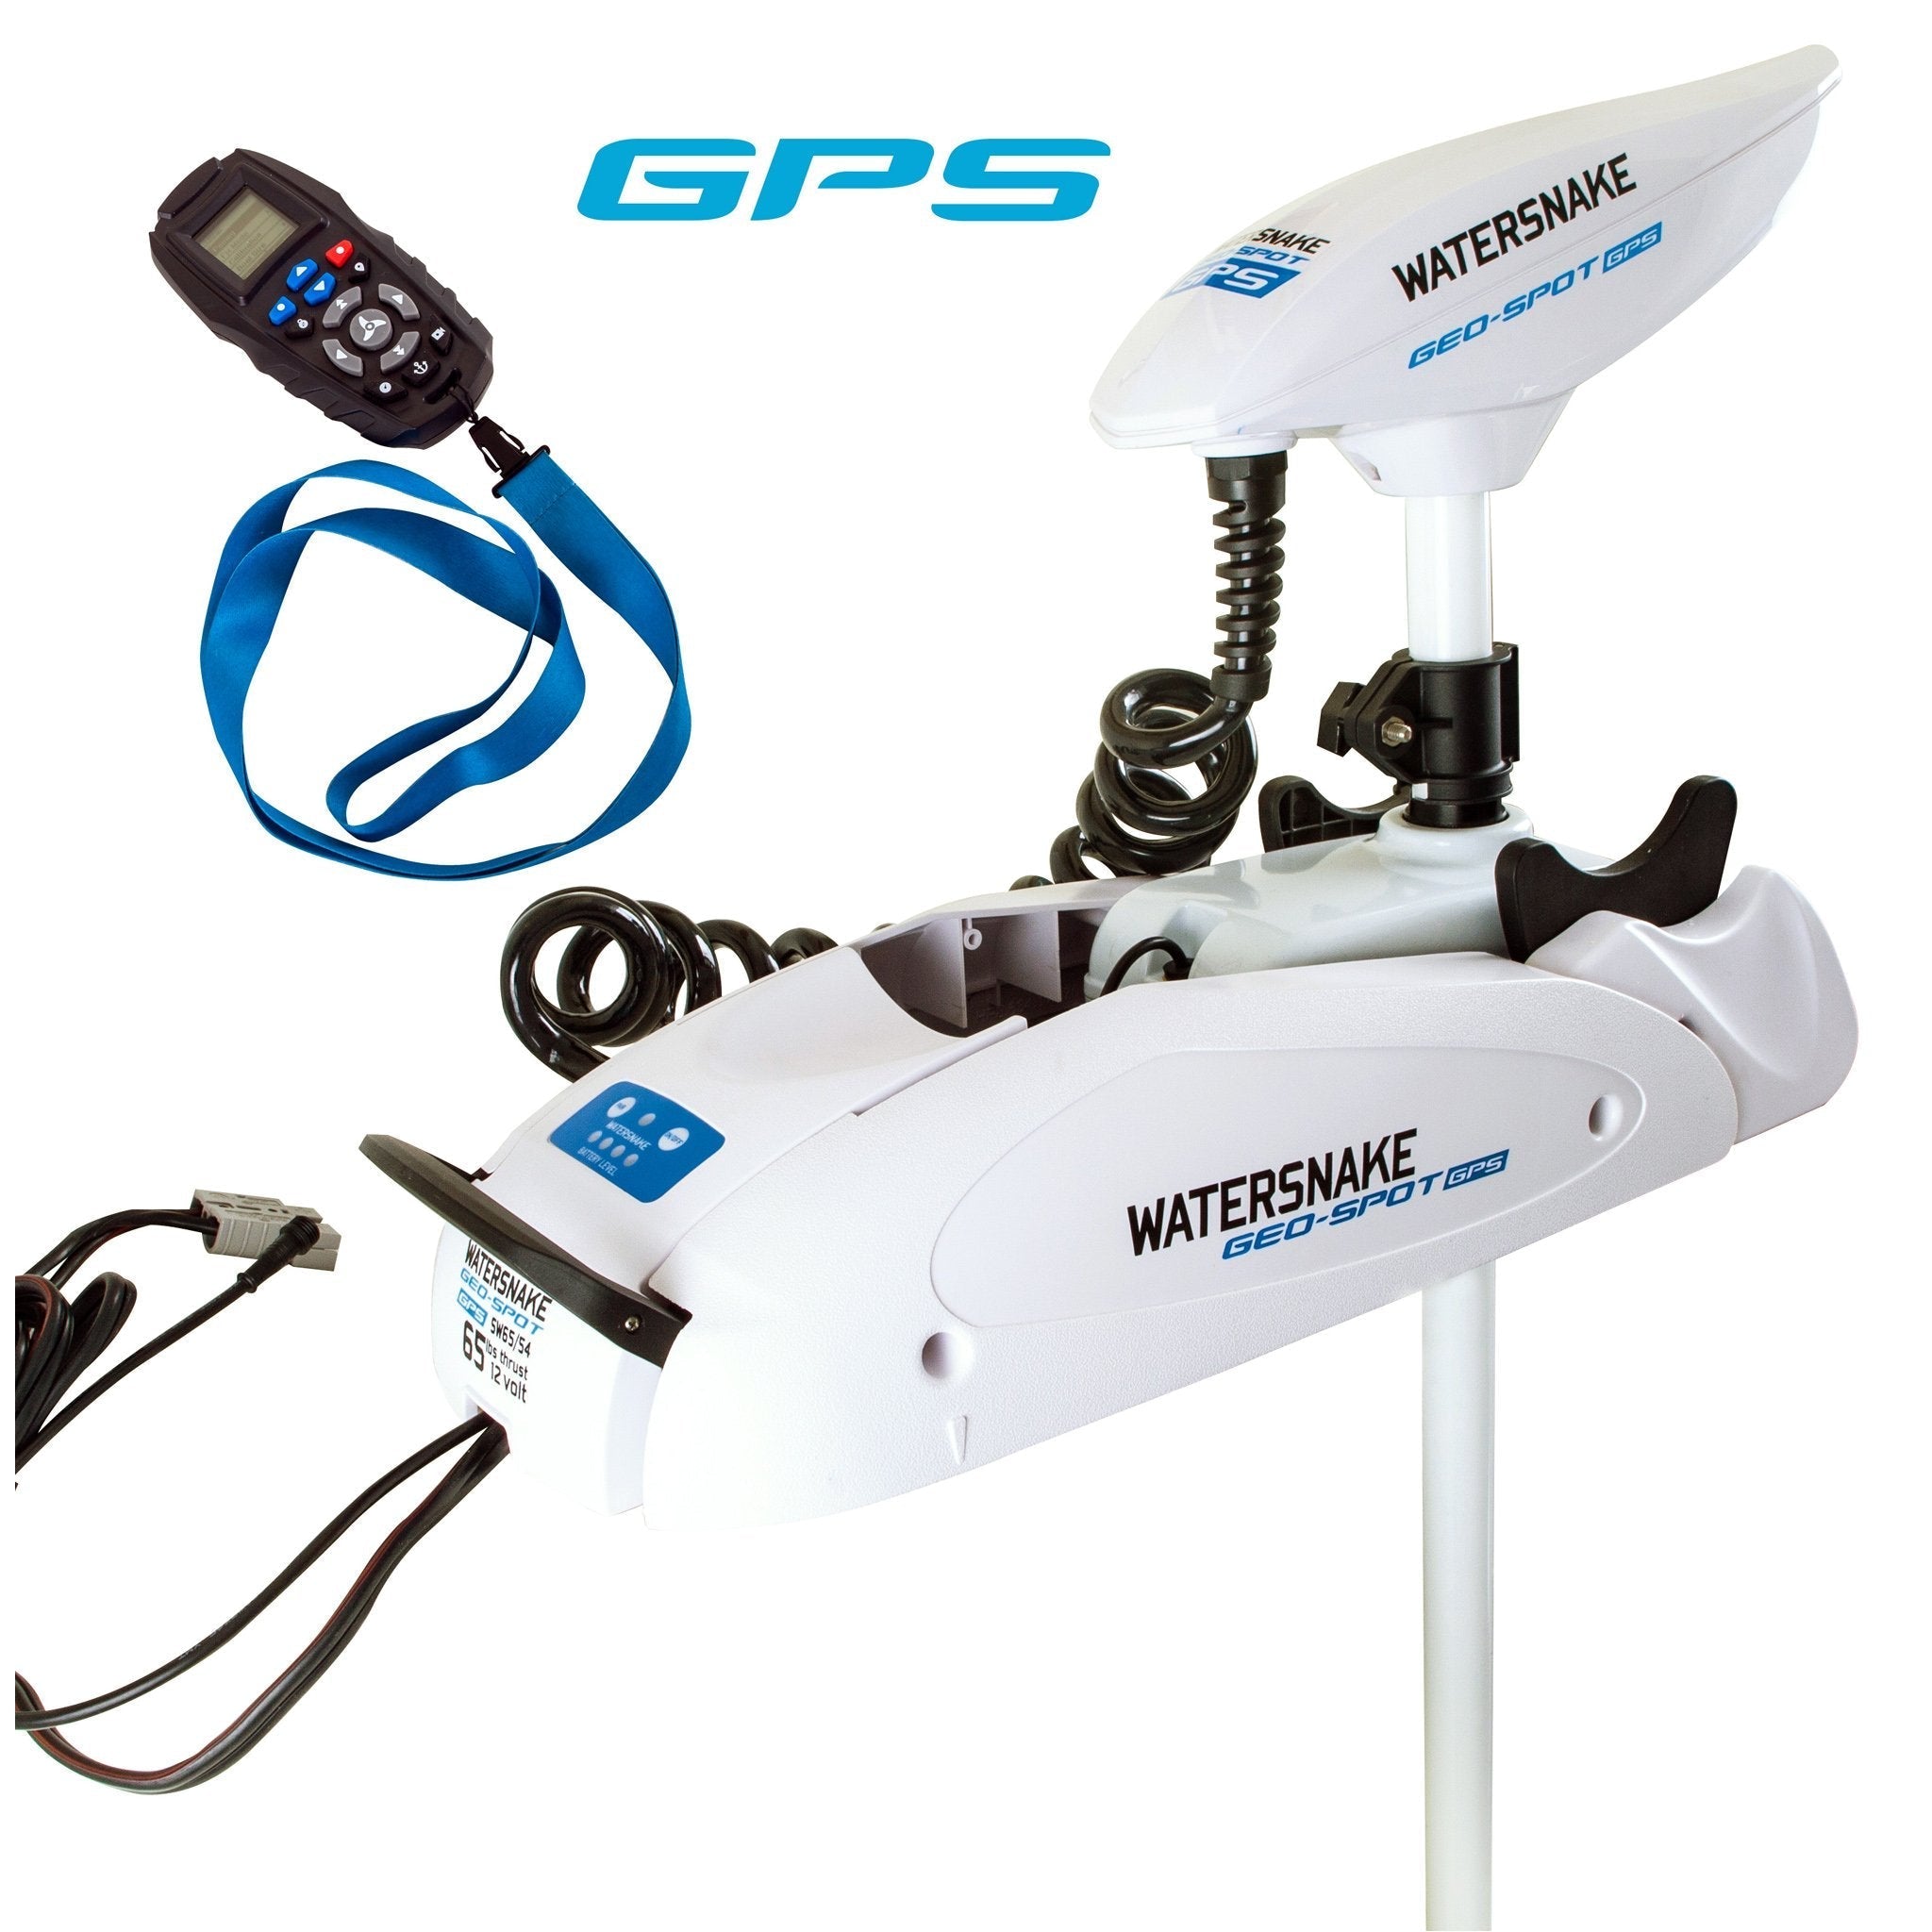 Watersnake Geo Spot GPS 65lb Bow Mount Motors - Navigate Fish with Ease | Watersnake – watersnake.eu.com